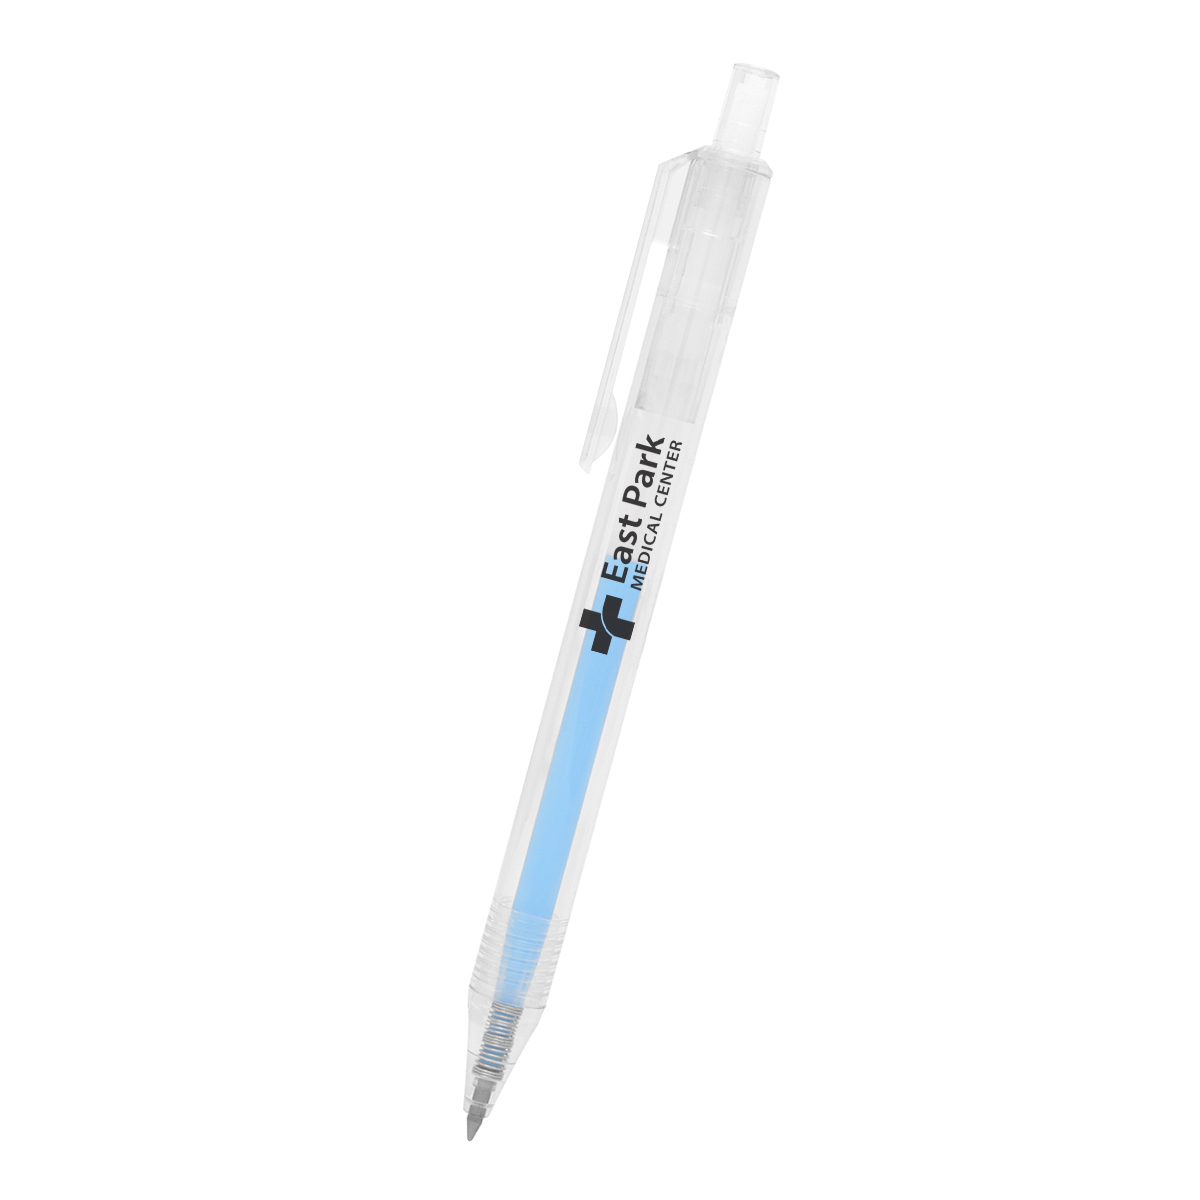 Custom Gel Pens  Personalized & Promotional Gel Ink Pens